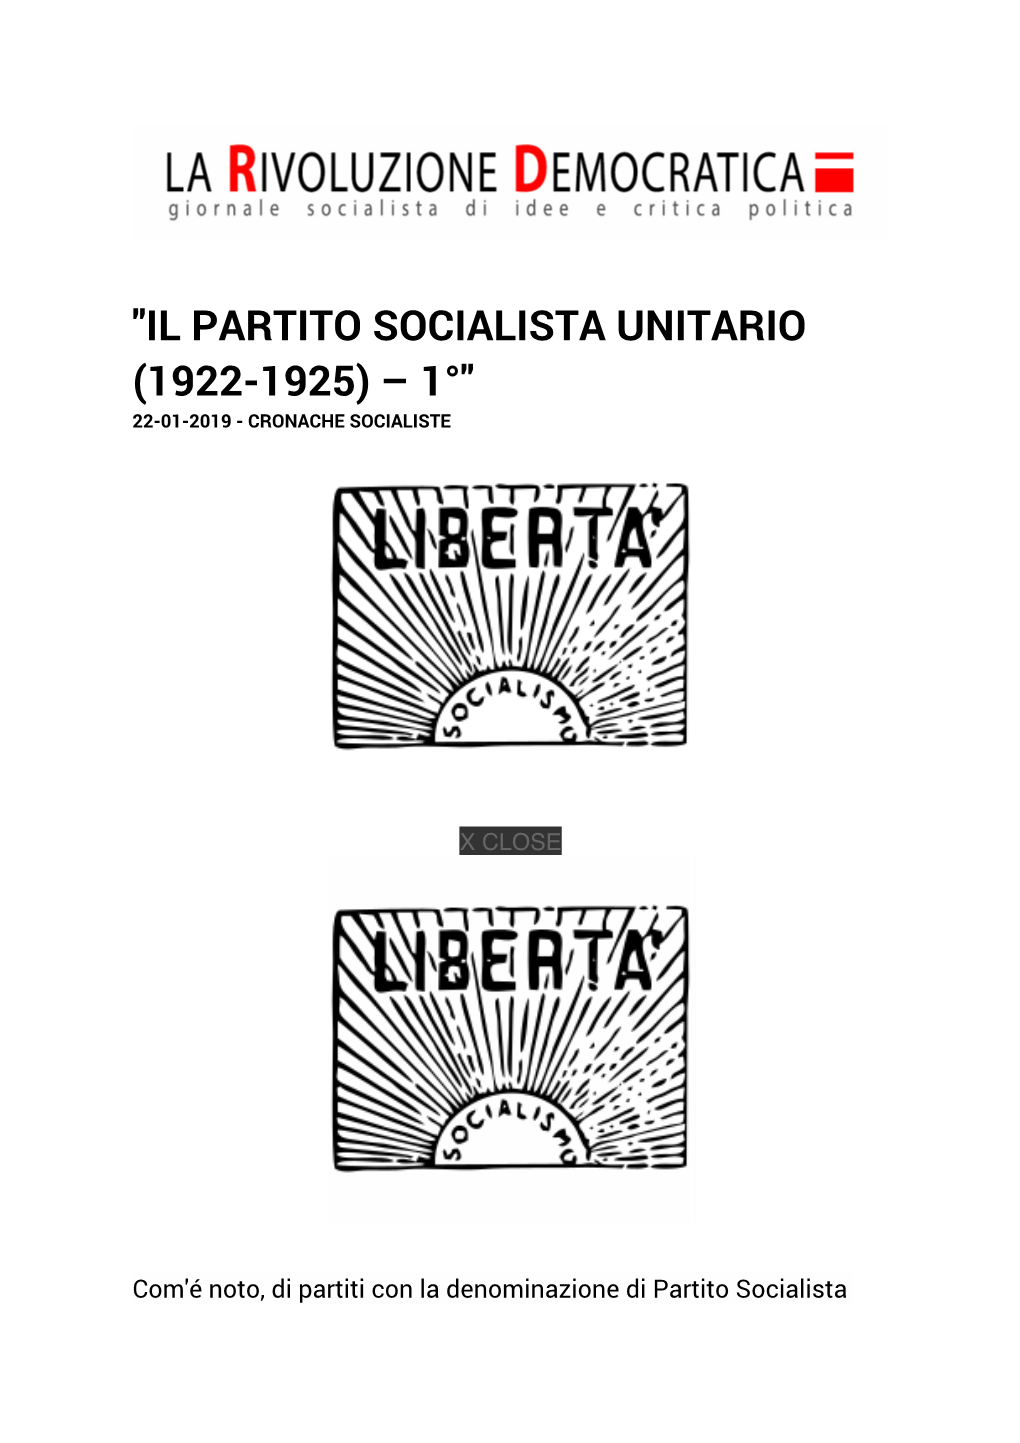 "Il Partito Socialista Unitario (1922-1925) – 1°" 22-01-2019 - Cronache Socialiste